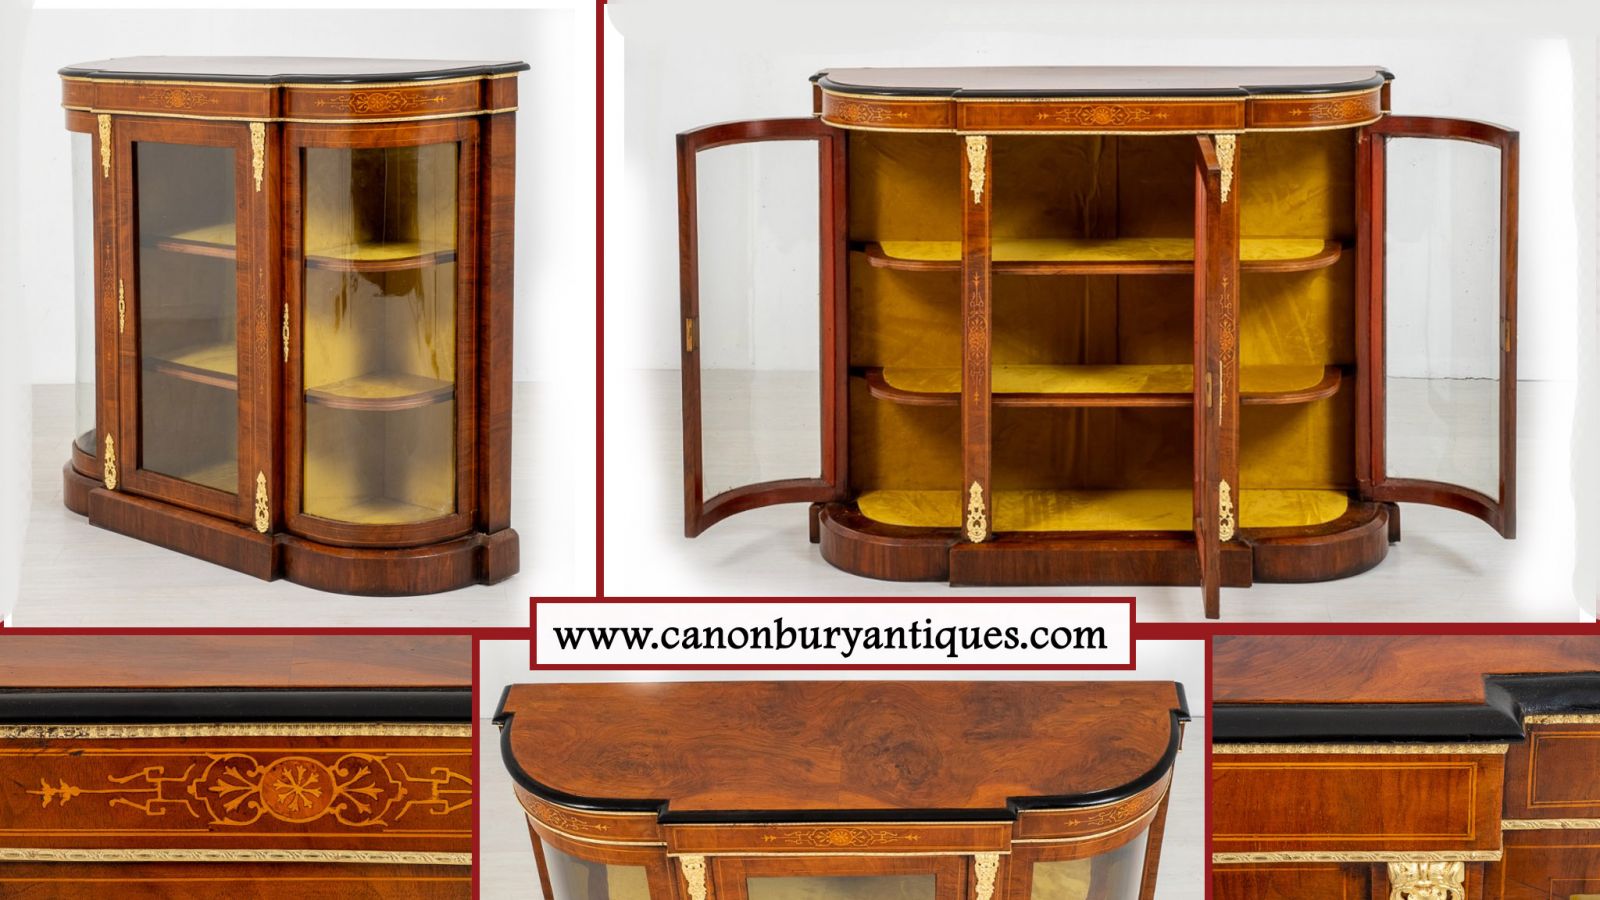 Victorian Credenza - Antique Sideboard Display Cabinet 1860